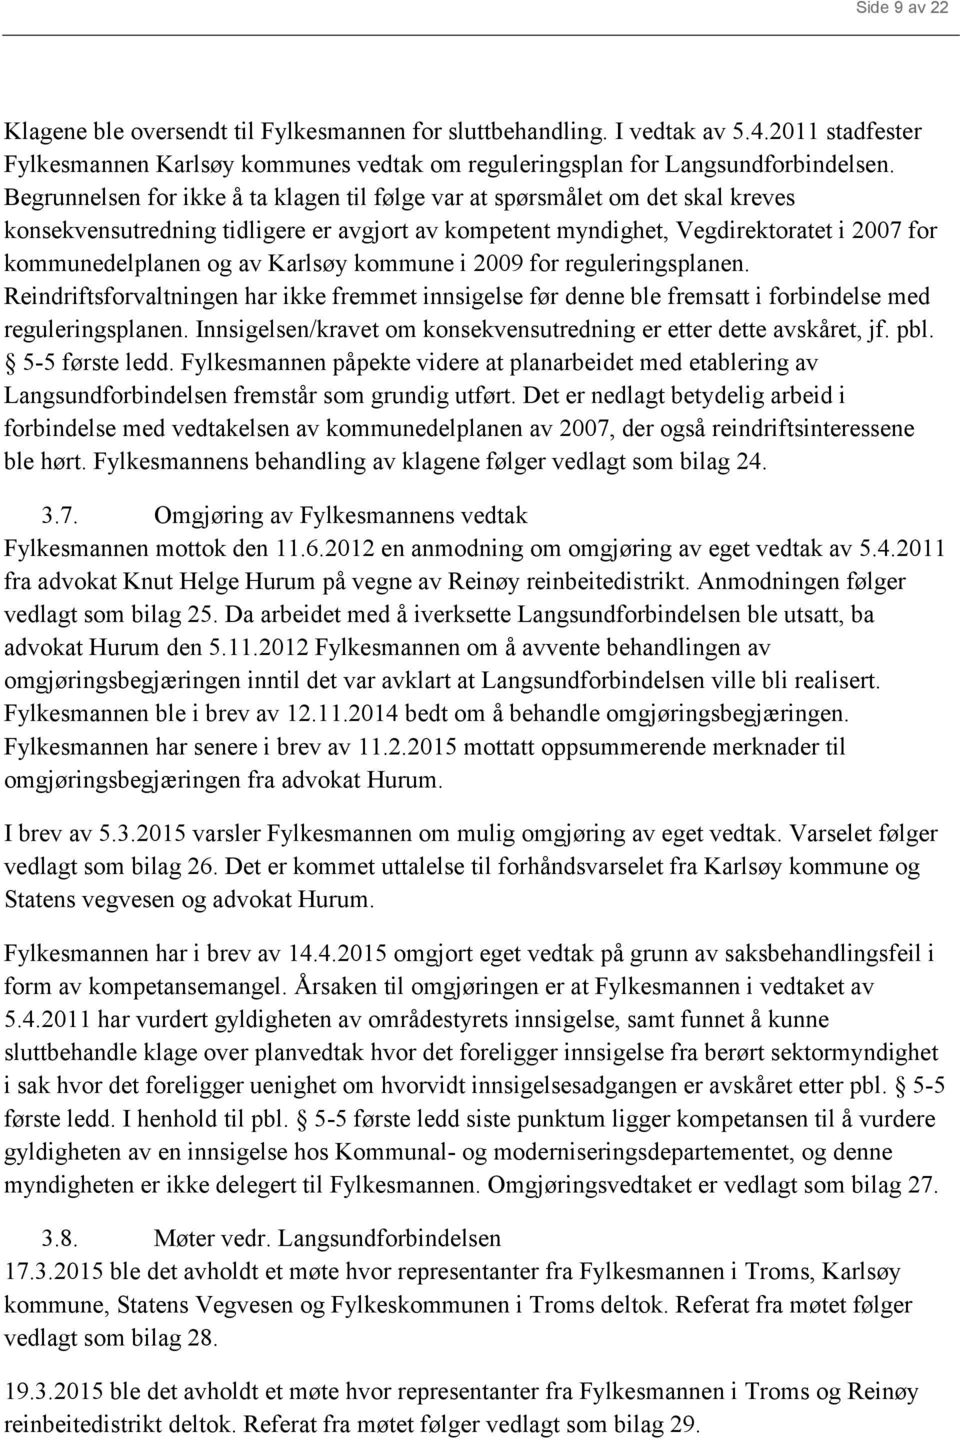 Karlsøy kommune i 2009 for reguleringsplanen. Reindriftsforvaltningen har ikke fremmet innsigelse før denne ble fremsatt i forbindelse med reguleringsplanen.